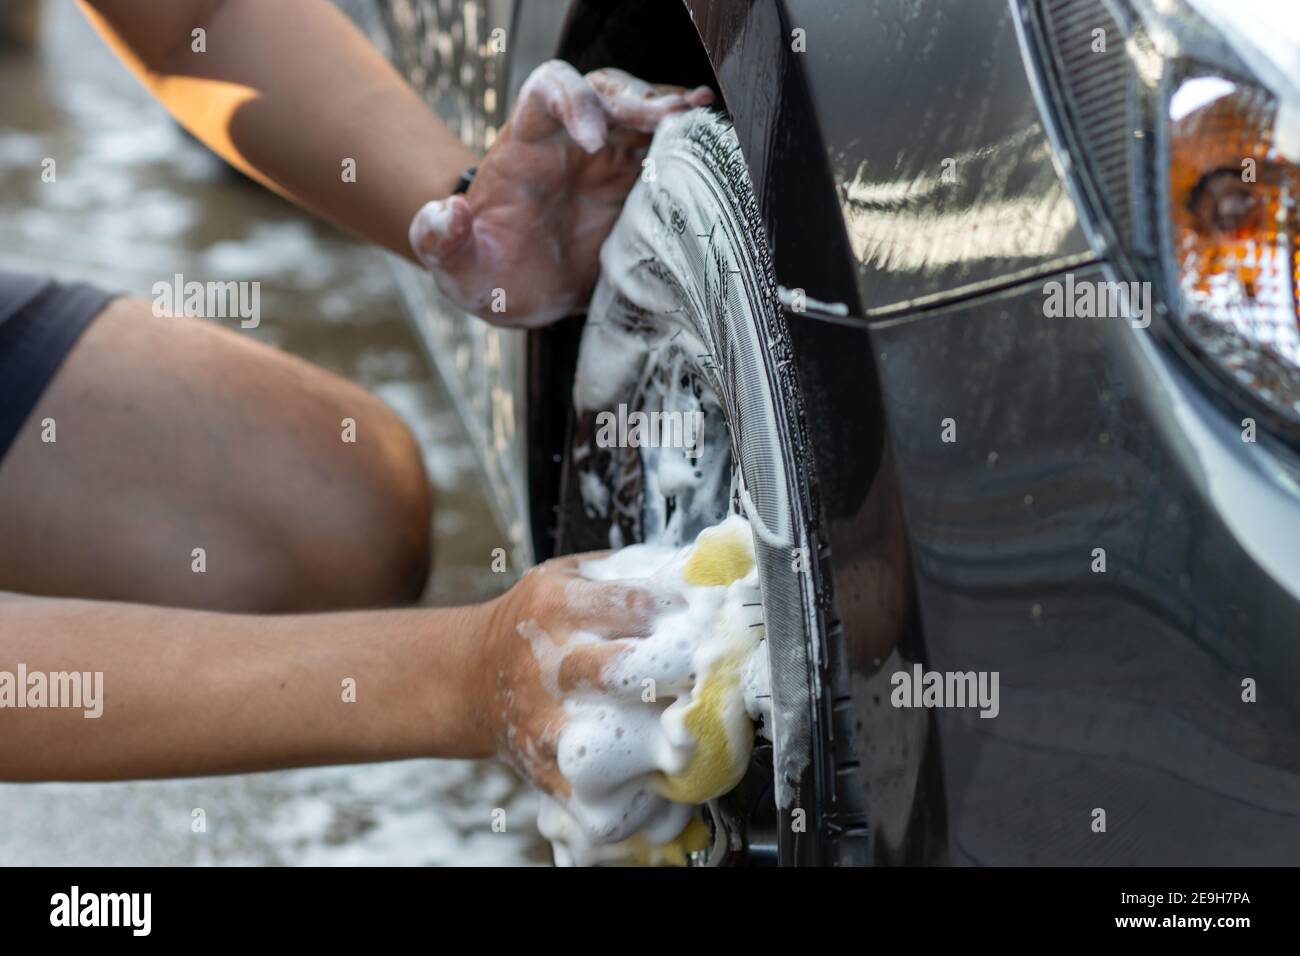 Laver à la main la roue de la voiture avec de l'eau savonneuse. L'homme nettoie la voiture avec une éponge, de l'eau et du détergent. Banque D'Images